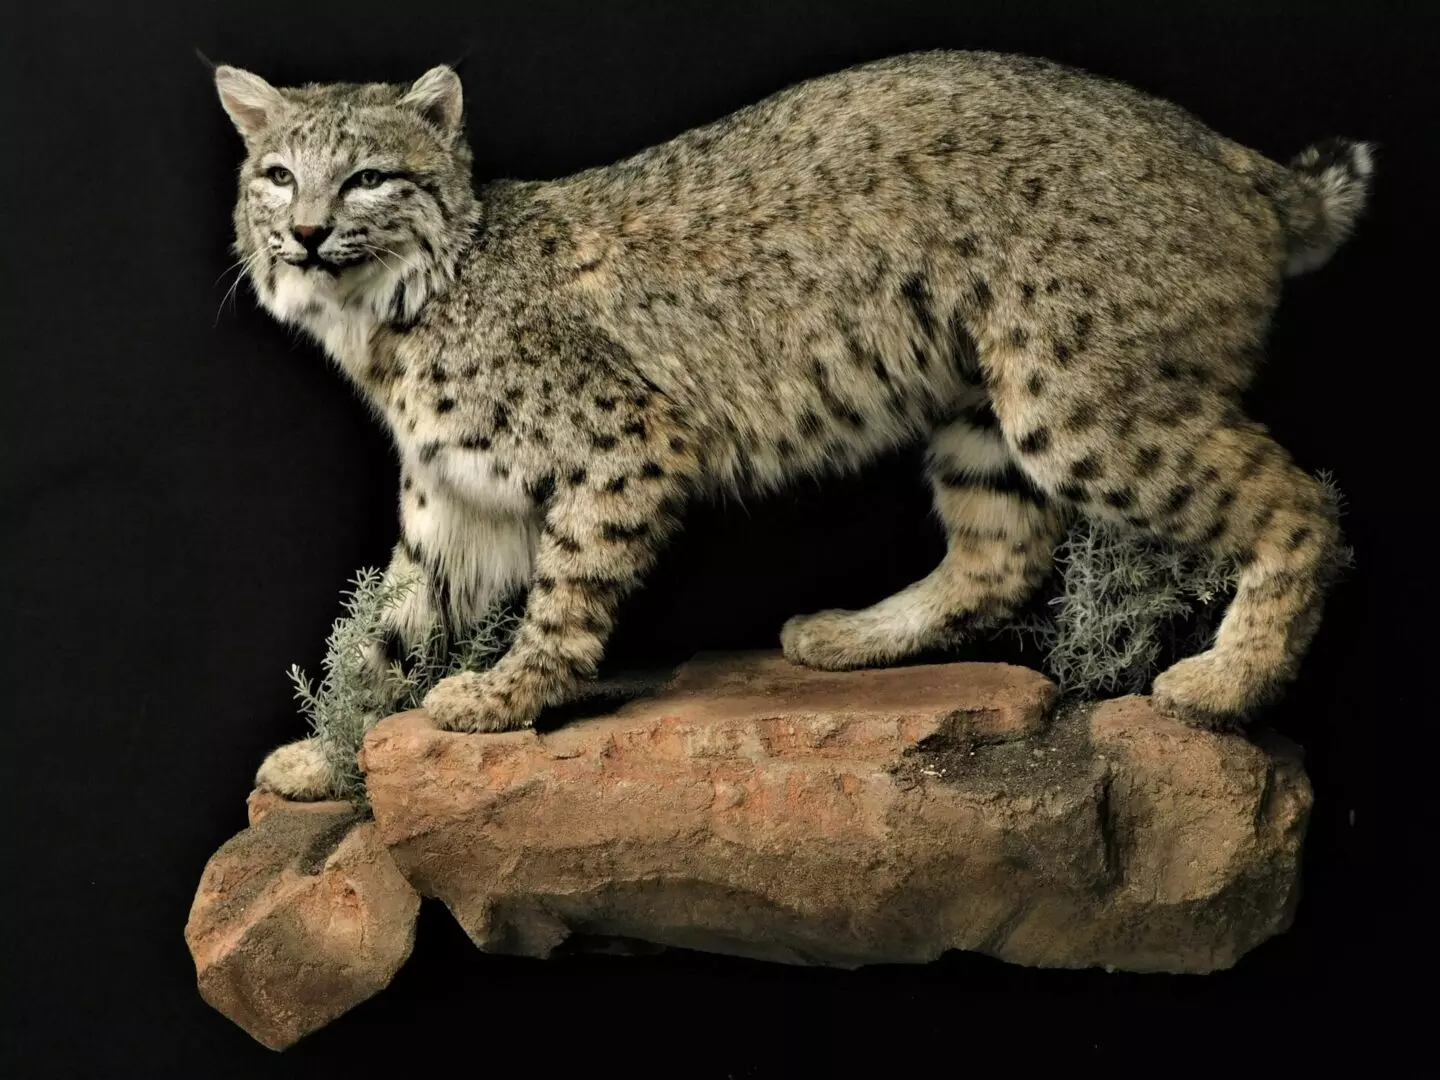 a bobcat standing on a rock